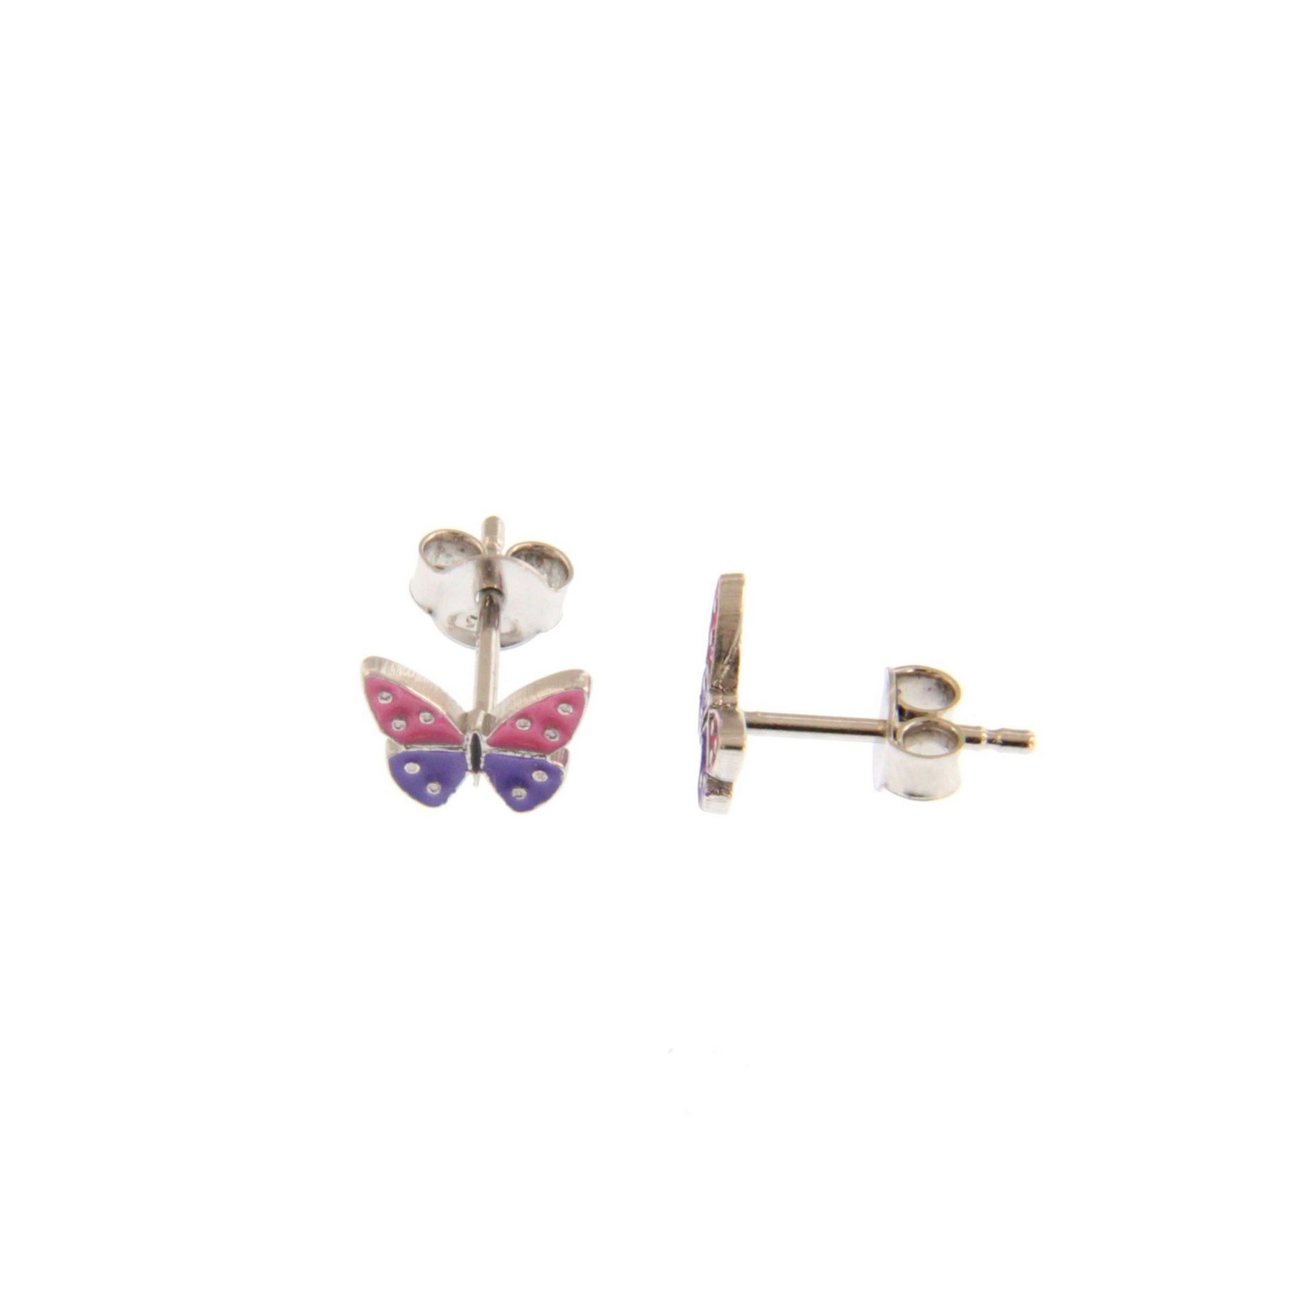 Μικρά ασημένια σκουλαρίκια σε σχήμα πεταλούδας (διάμετρος 0.9 εκ) με σμάλτο σε ροζ και μωβ χρώμα